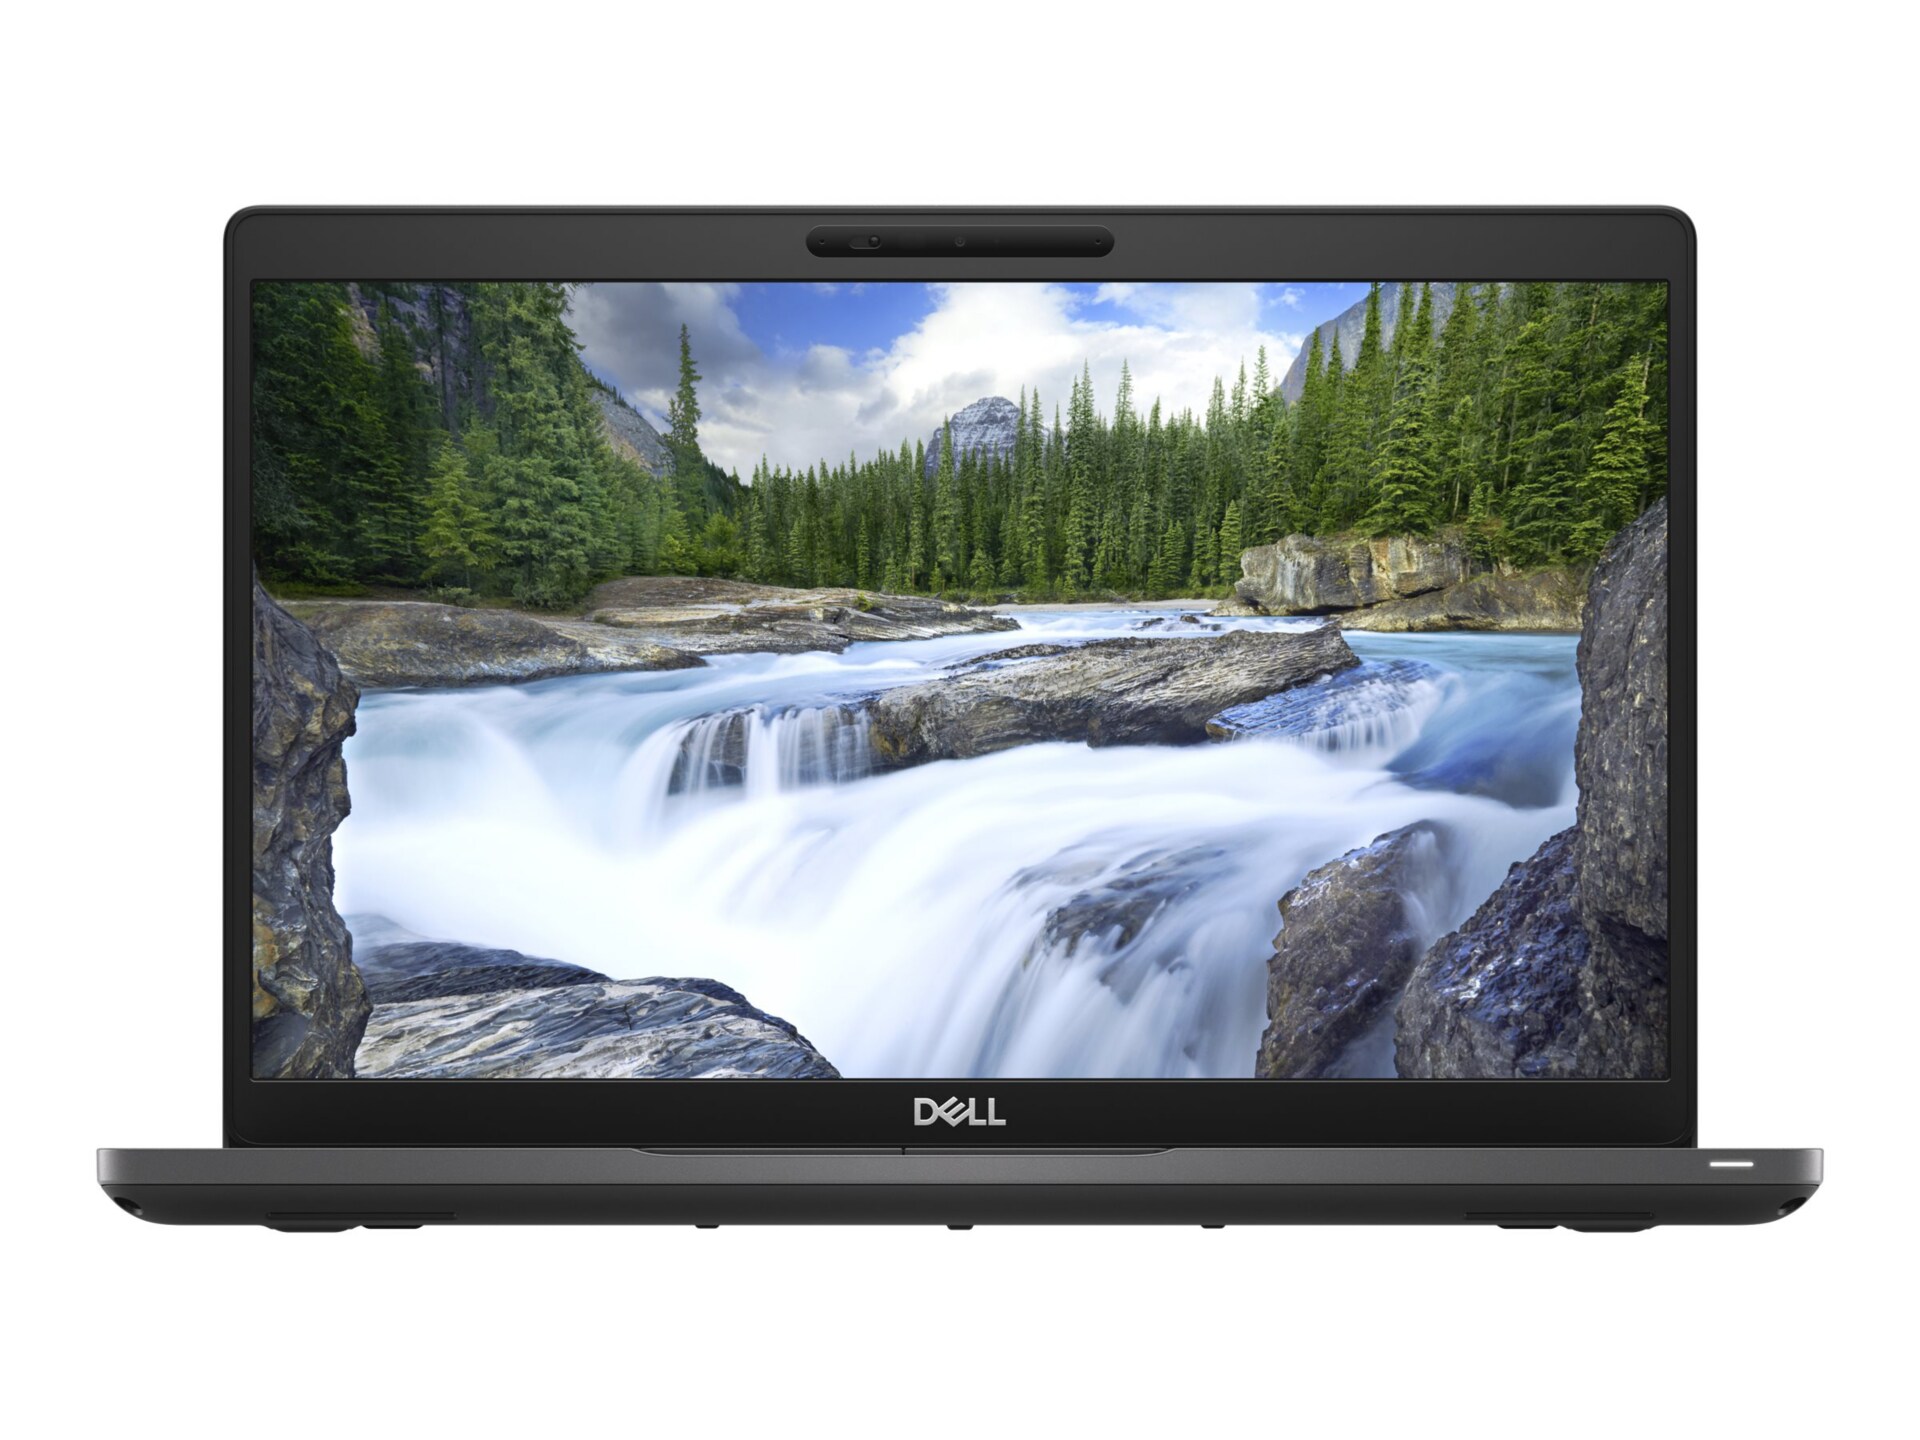 Dell 5400 14" Core iI5-88265U 128GB SSD 8GB RAM Chromebook